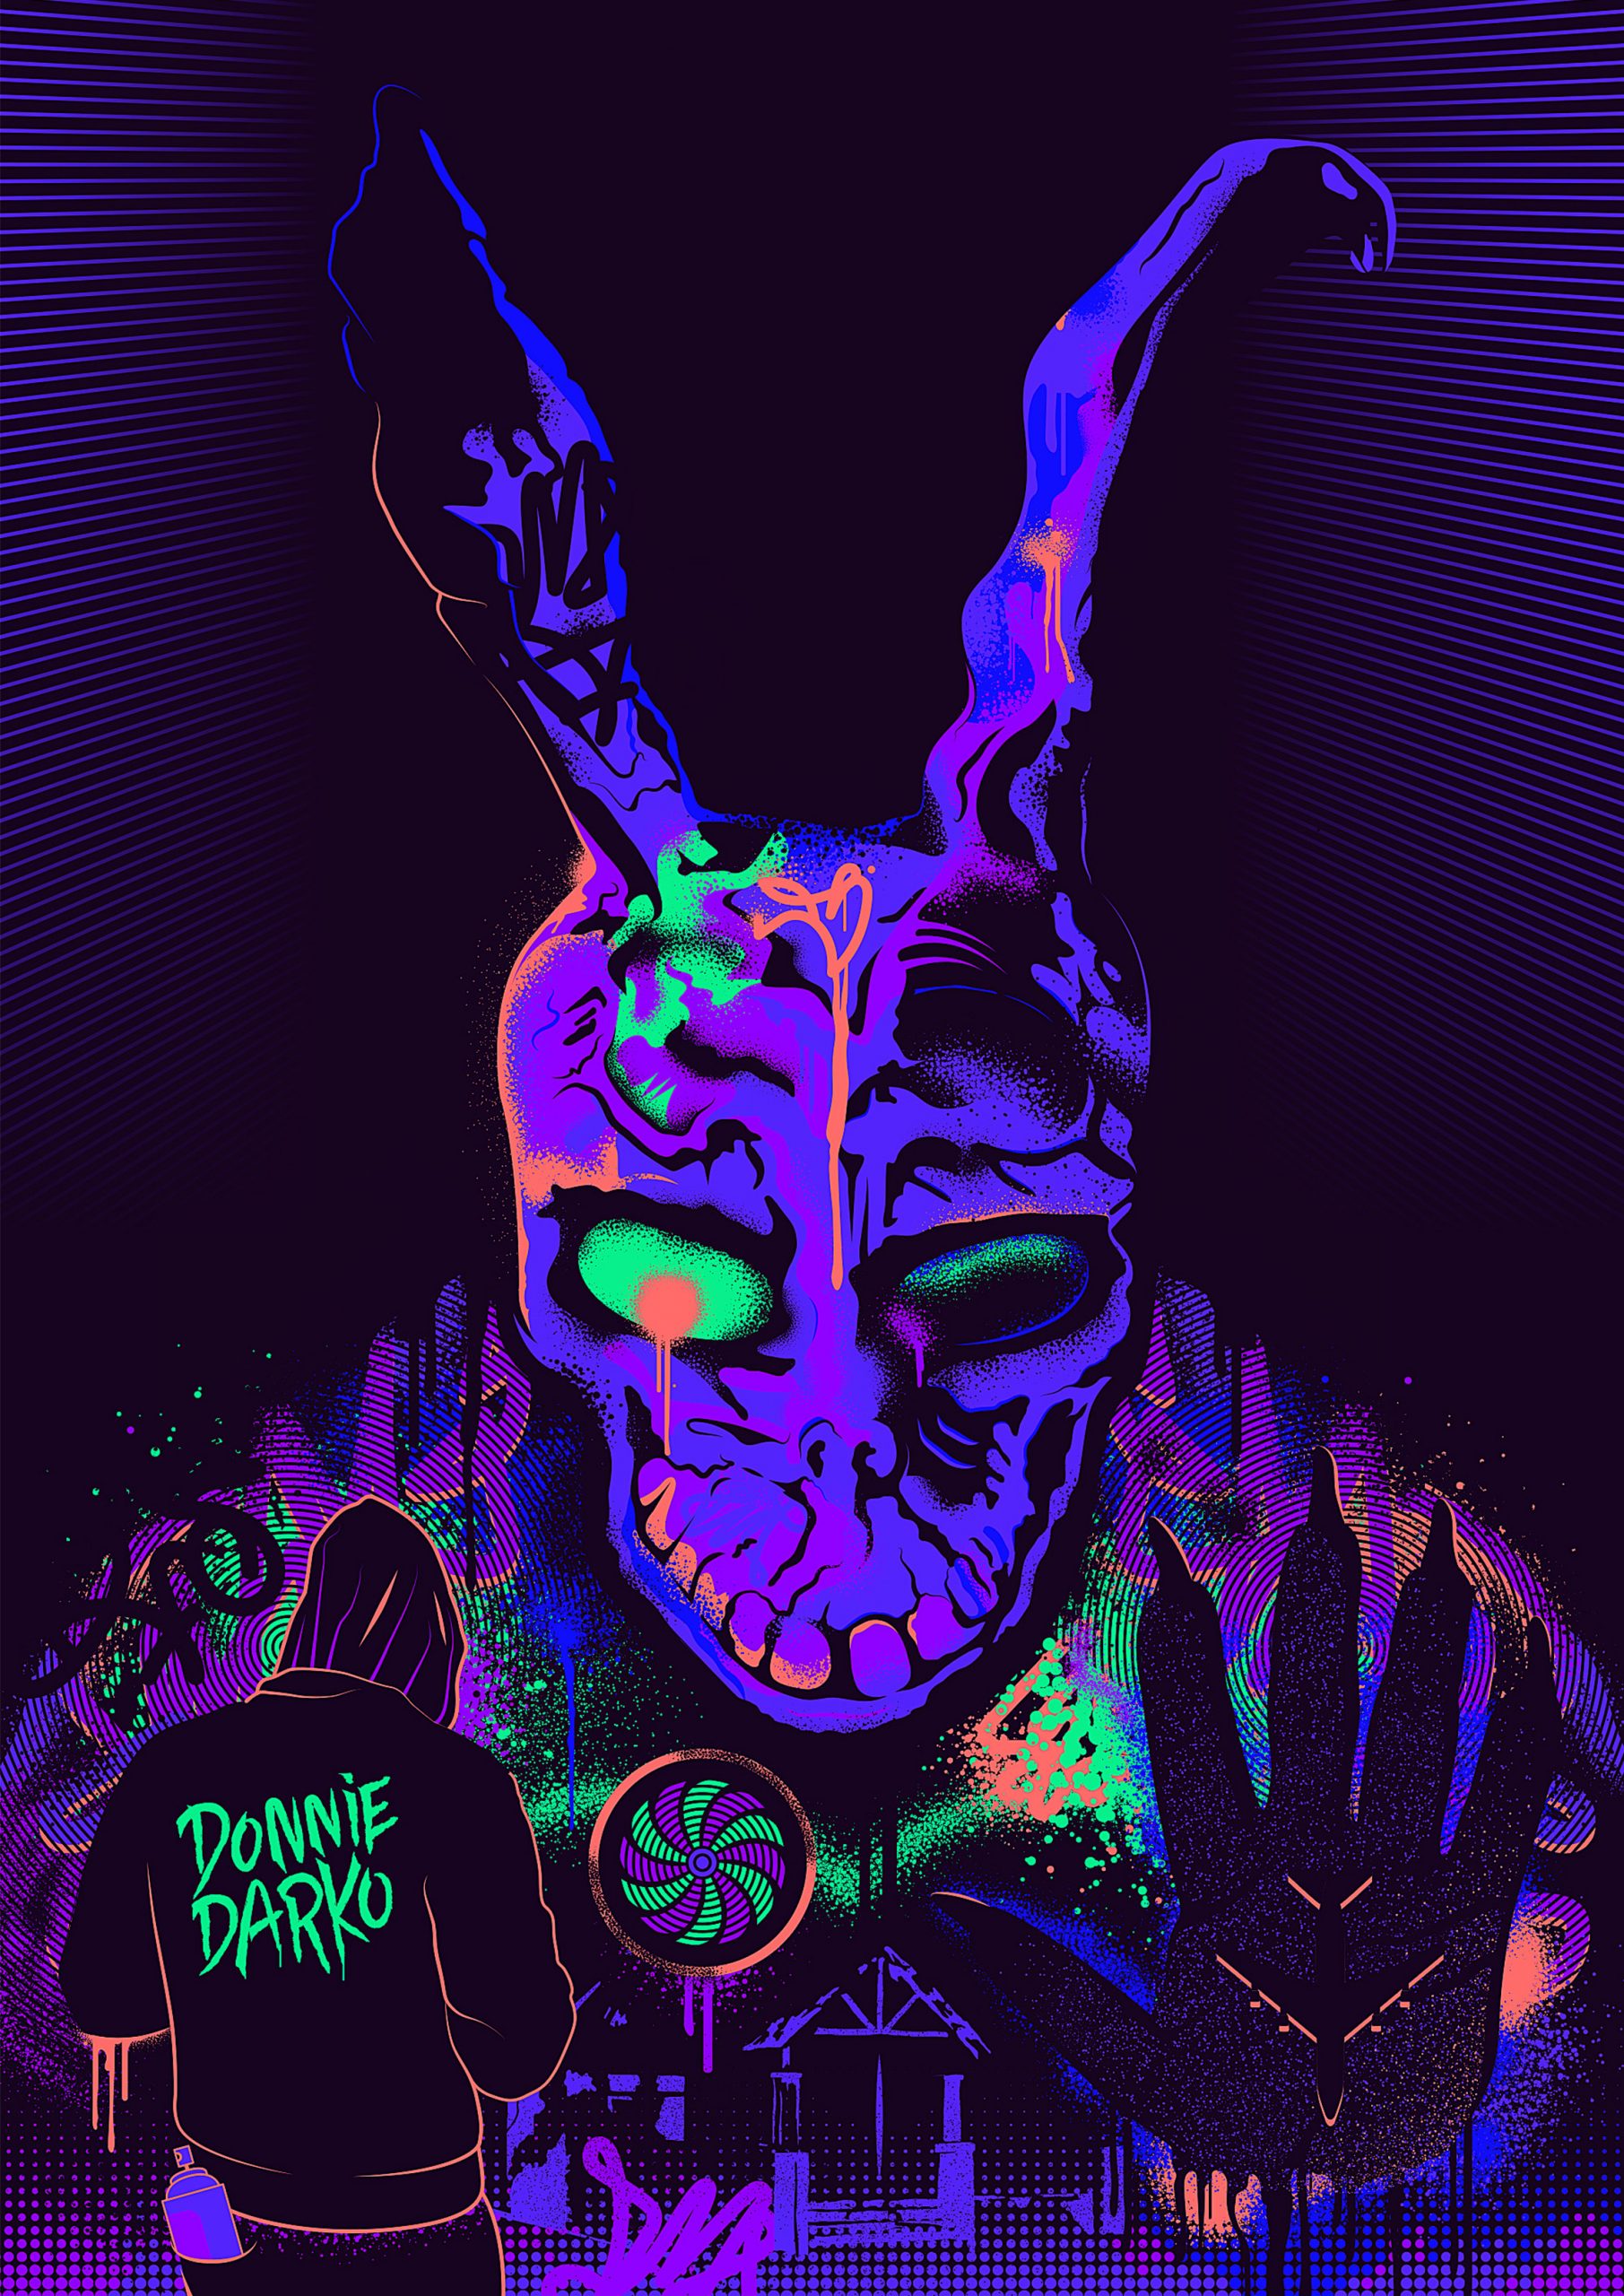 Donnie Darko artwork